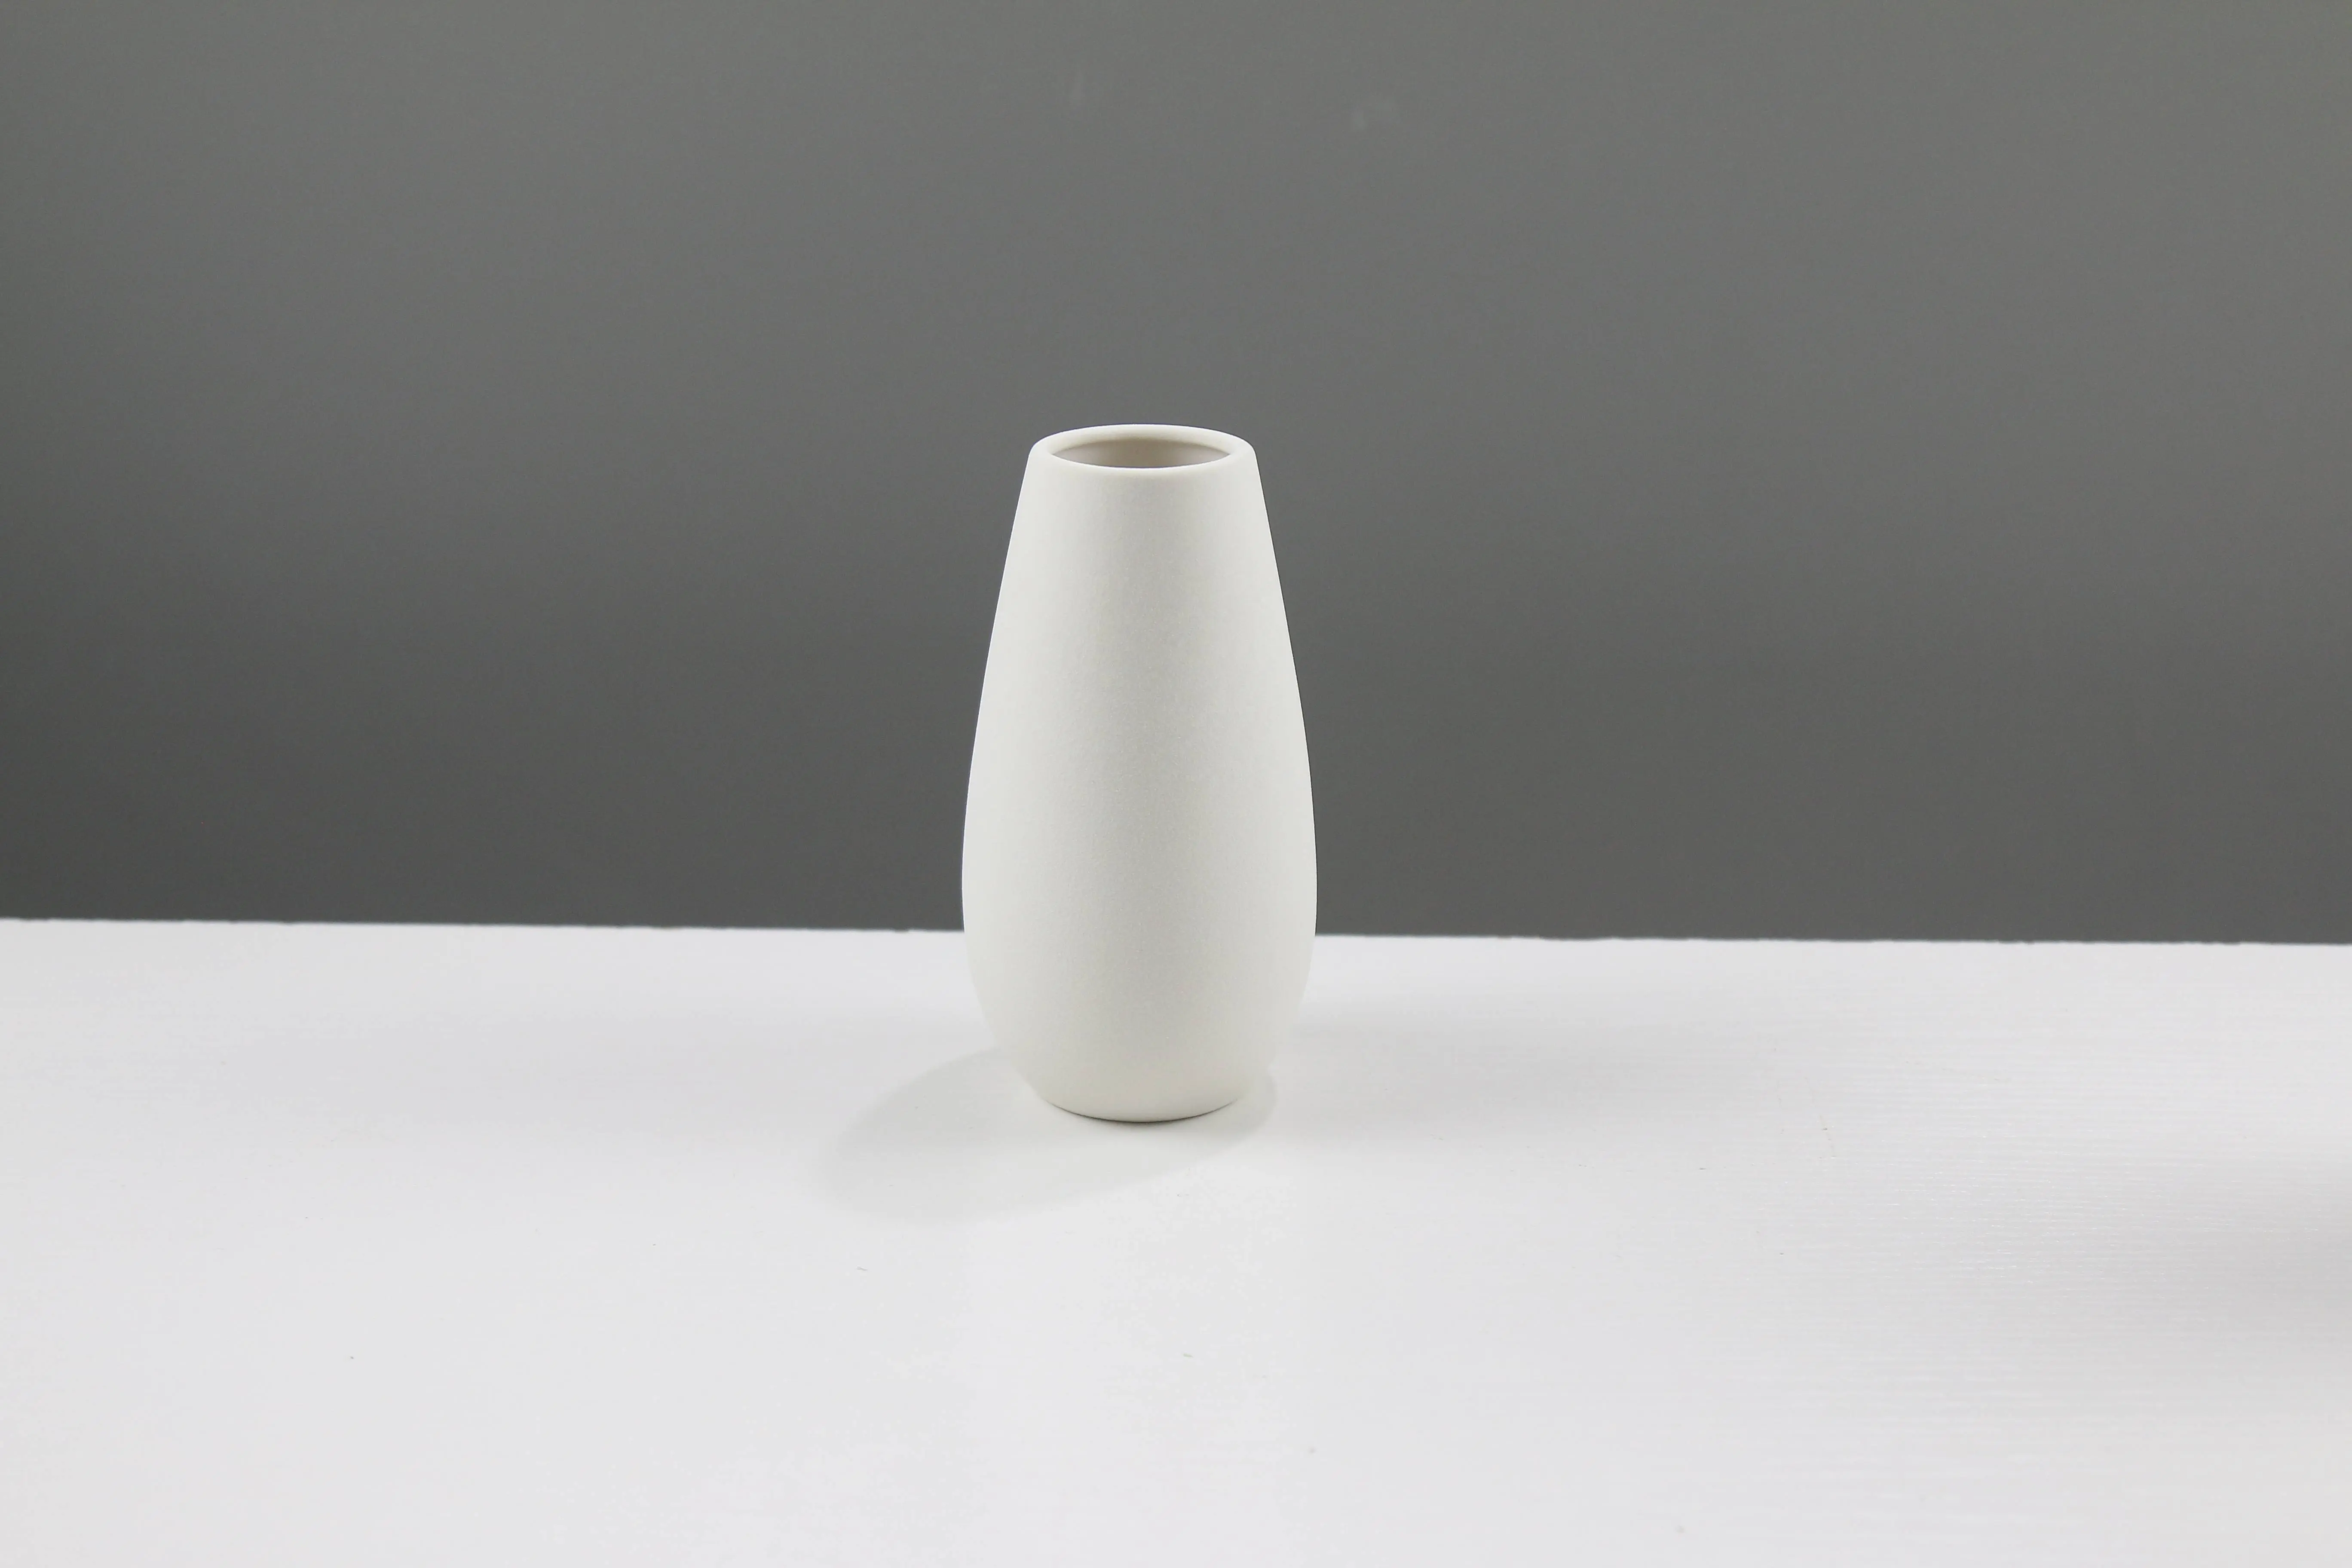 Vaso de mesa popular de porcelana branca fosca para uso diário e decoração de casa, design moderno